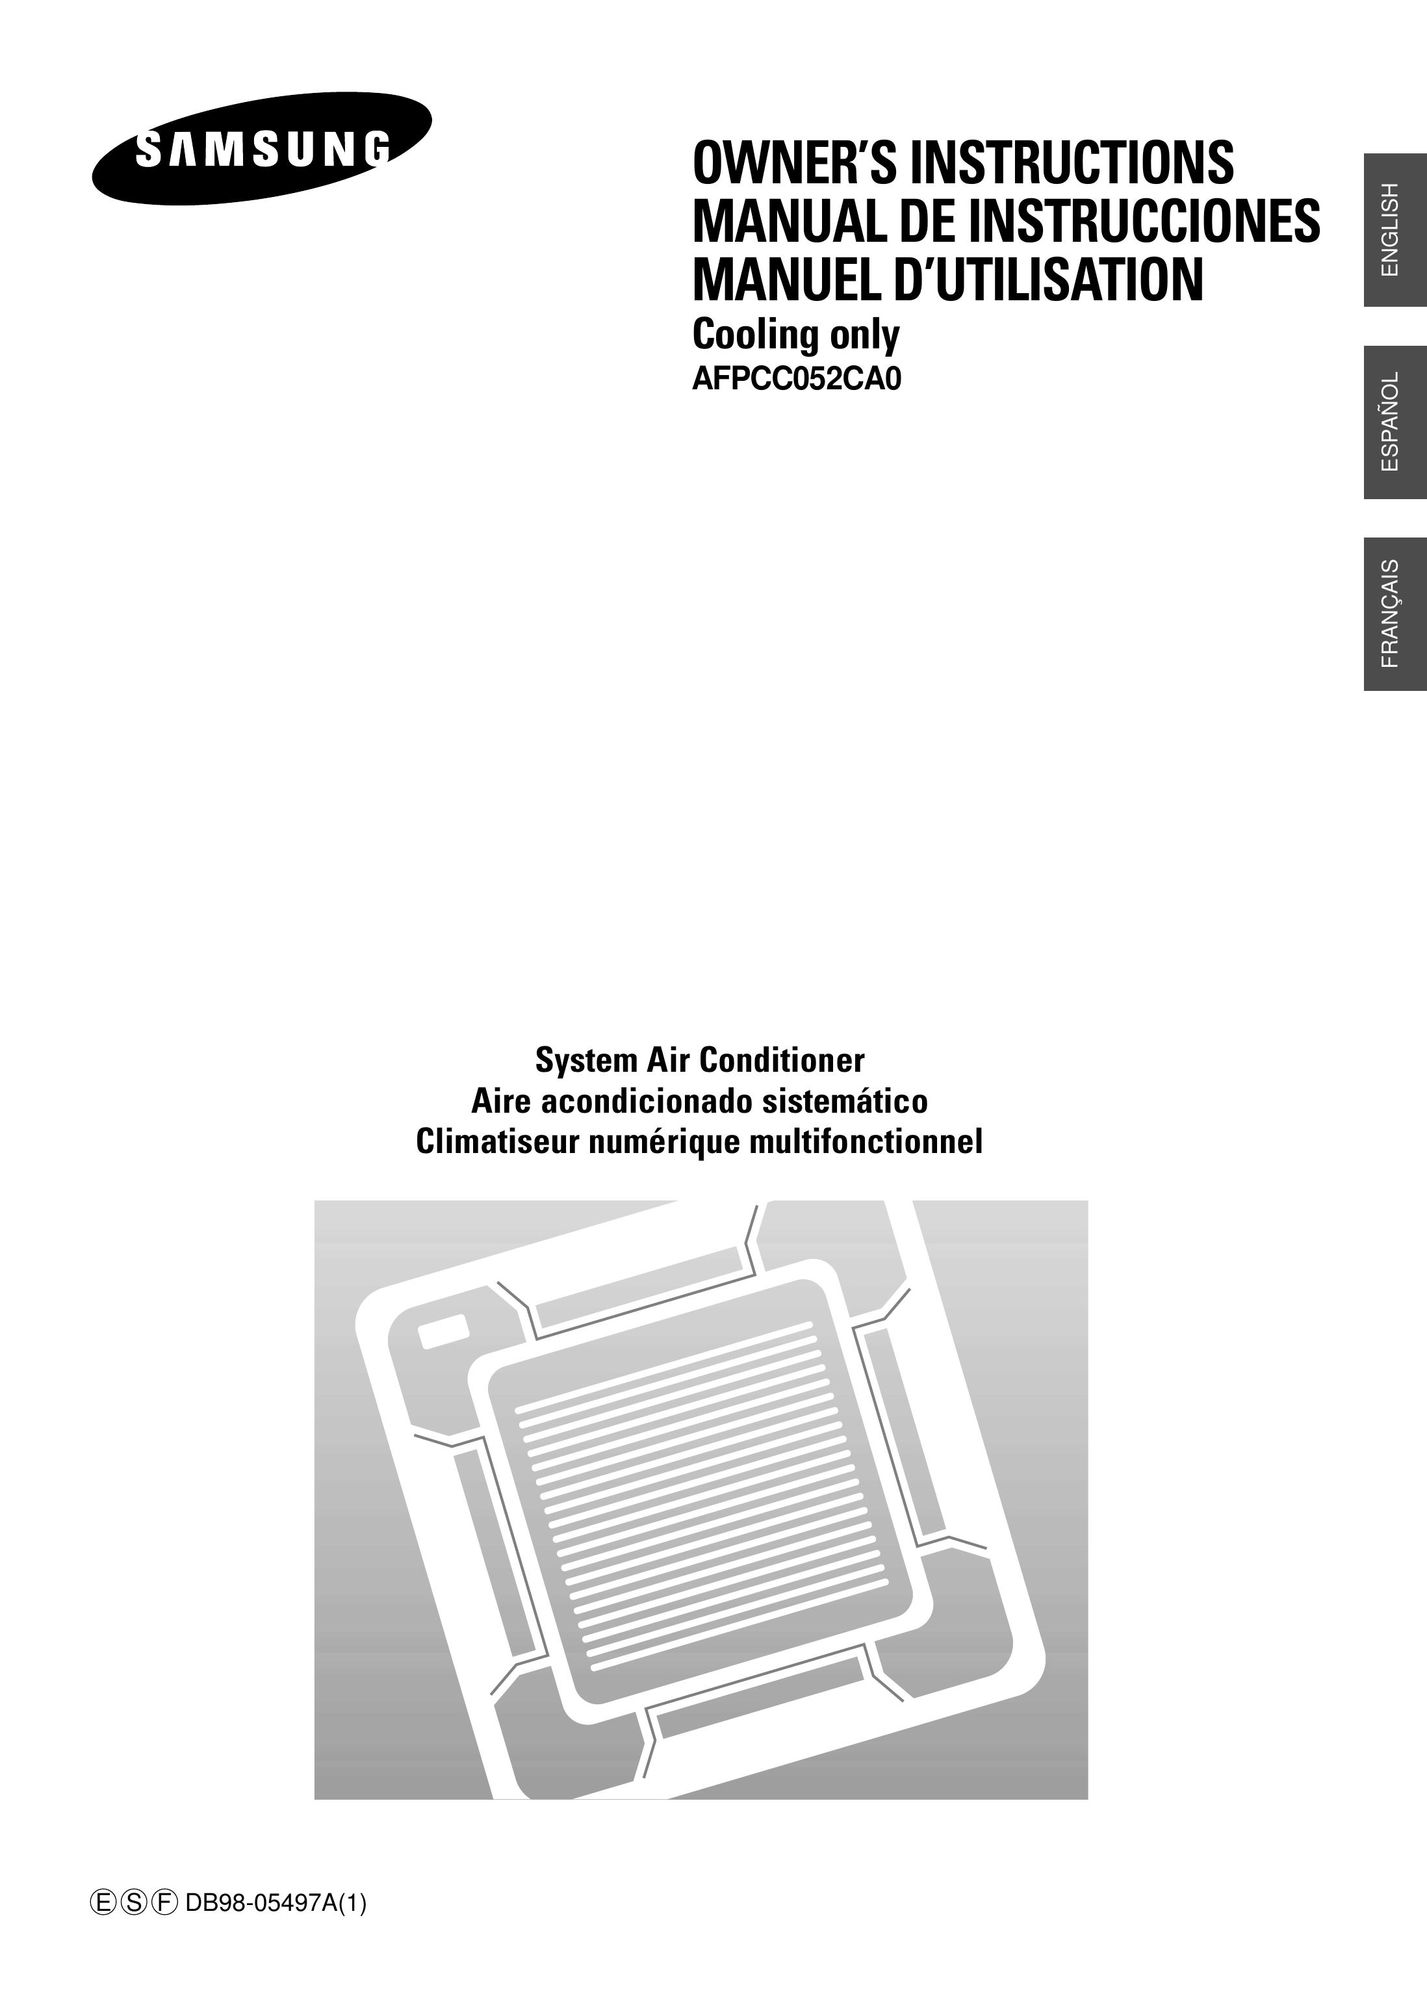 Samsung AFPCC052CA0 Air Conditioner User Manual